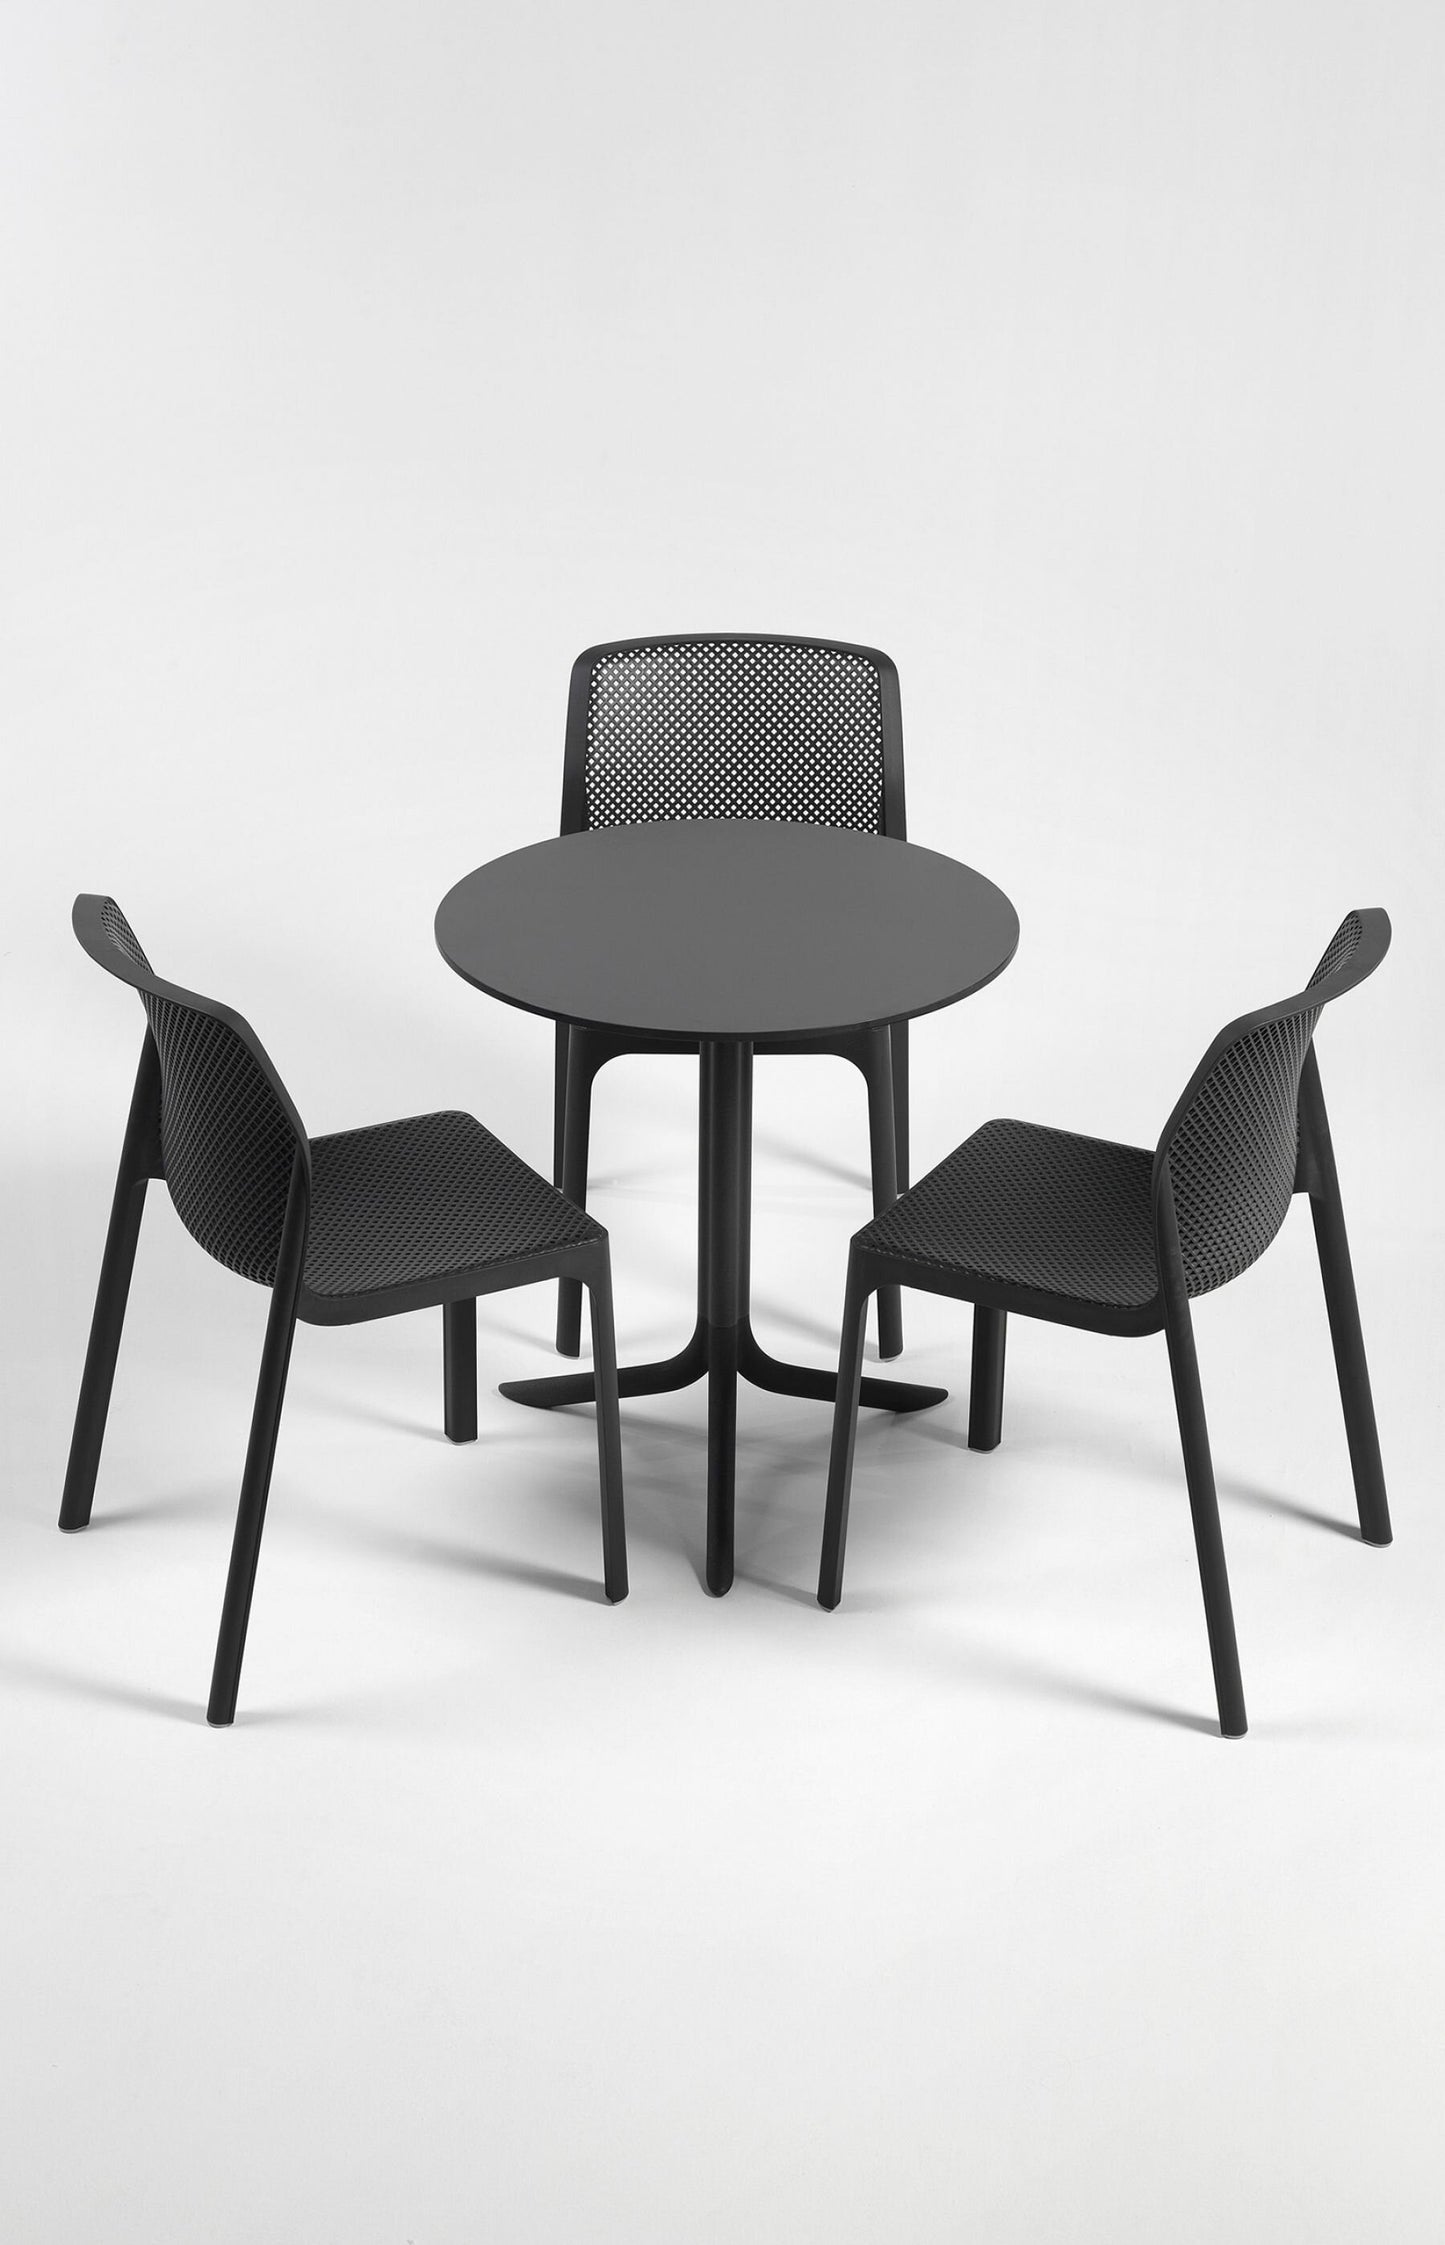 Bit Chair by Nardi